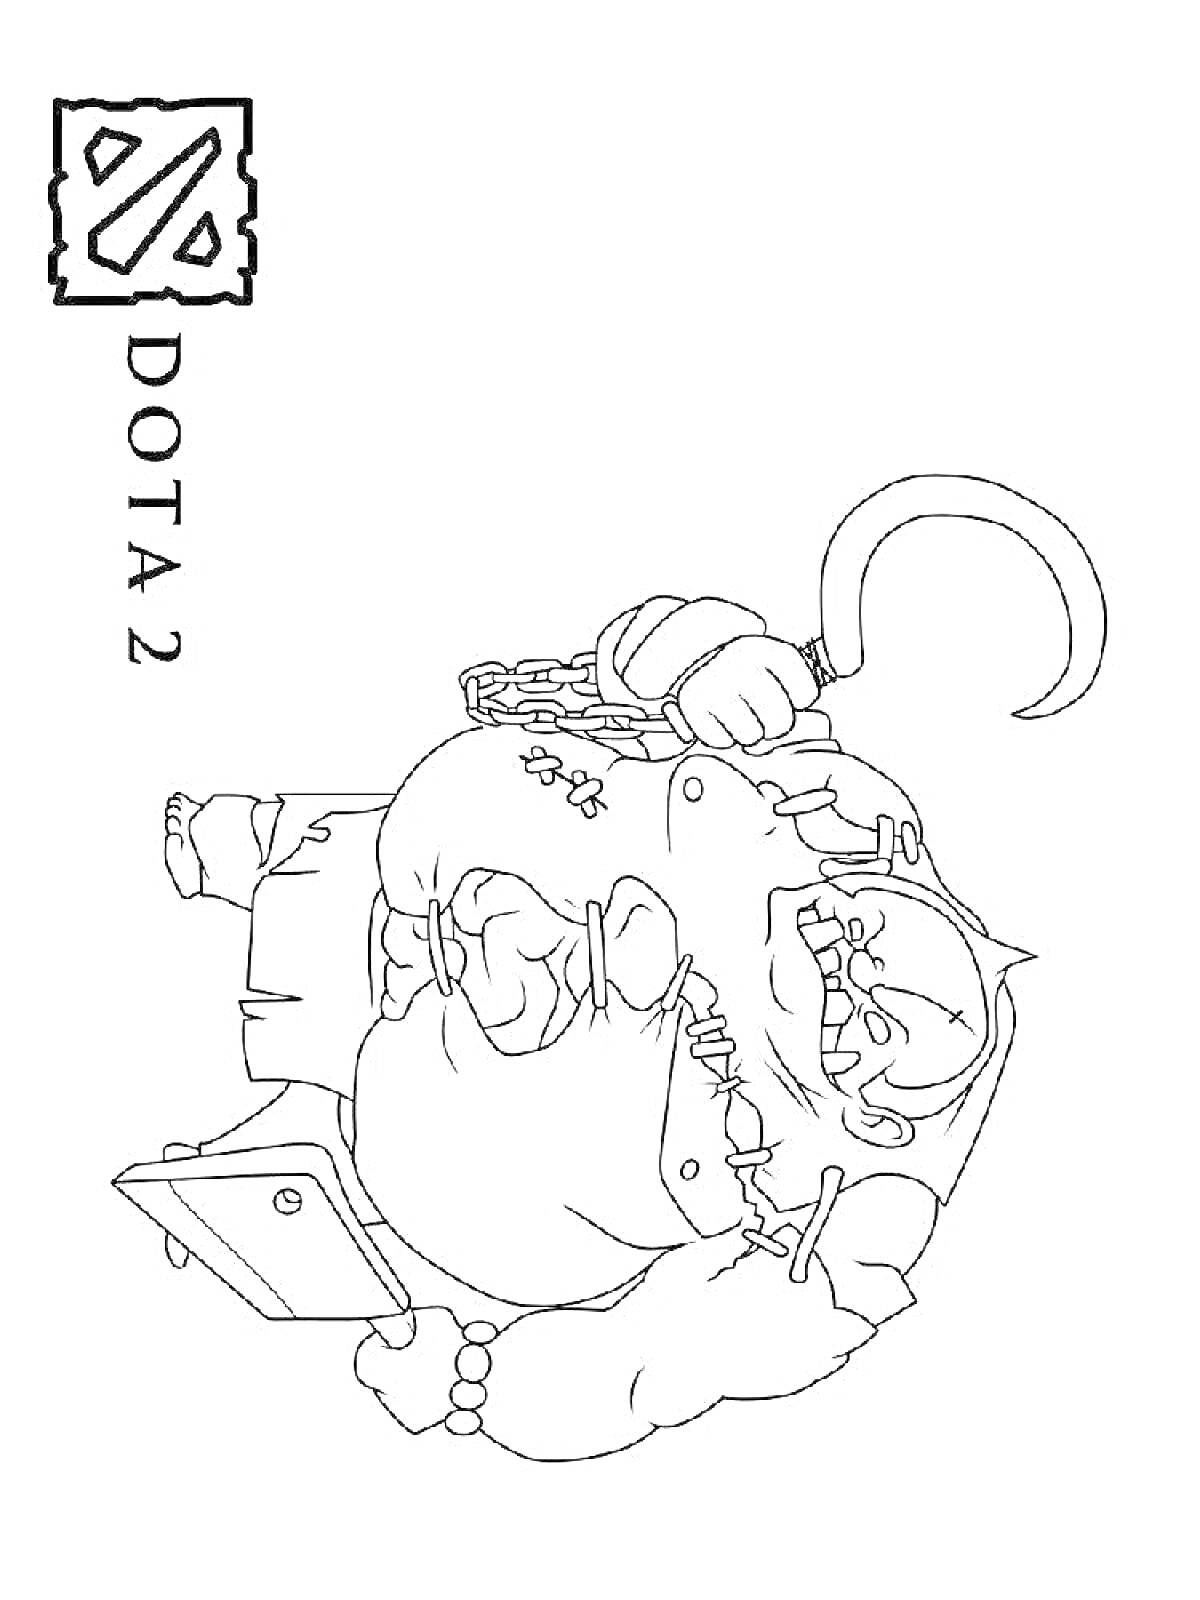 Раскраска Персонаж Пудж из игры Dota 2 с ножом и цепью, логотип и текст Dota 2 в левом верхнем углу